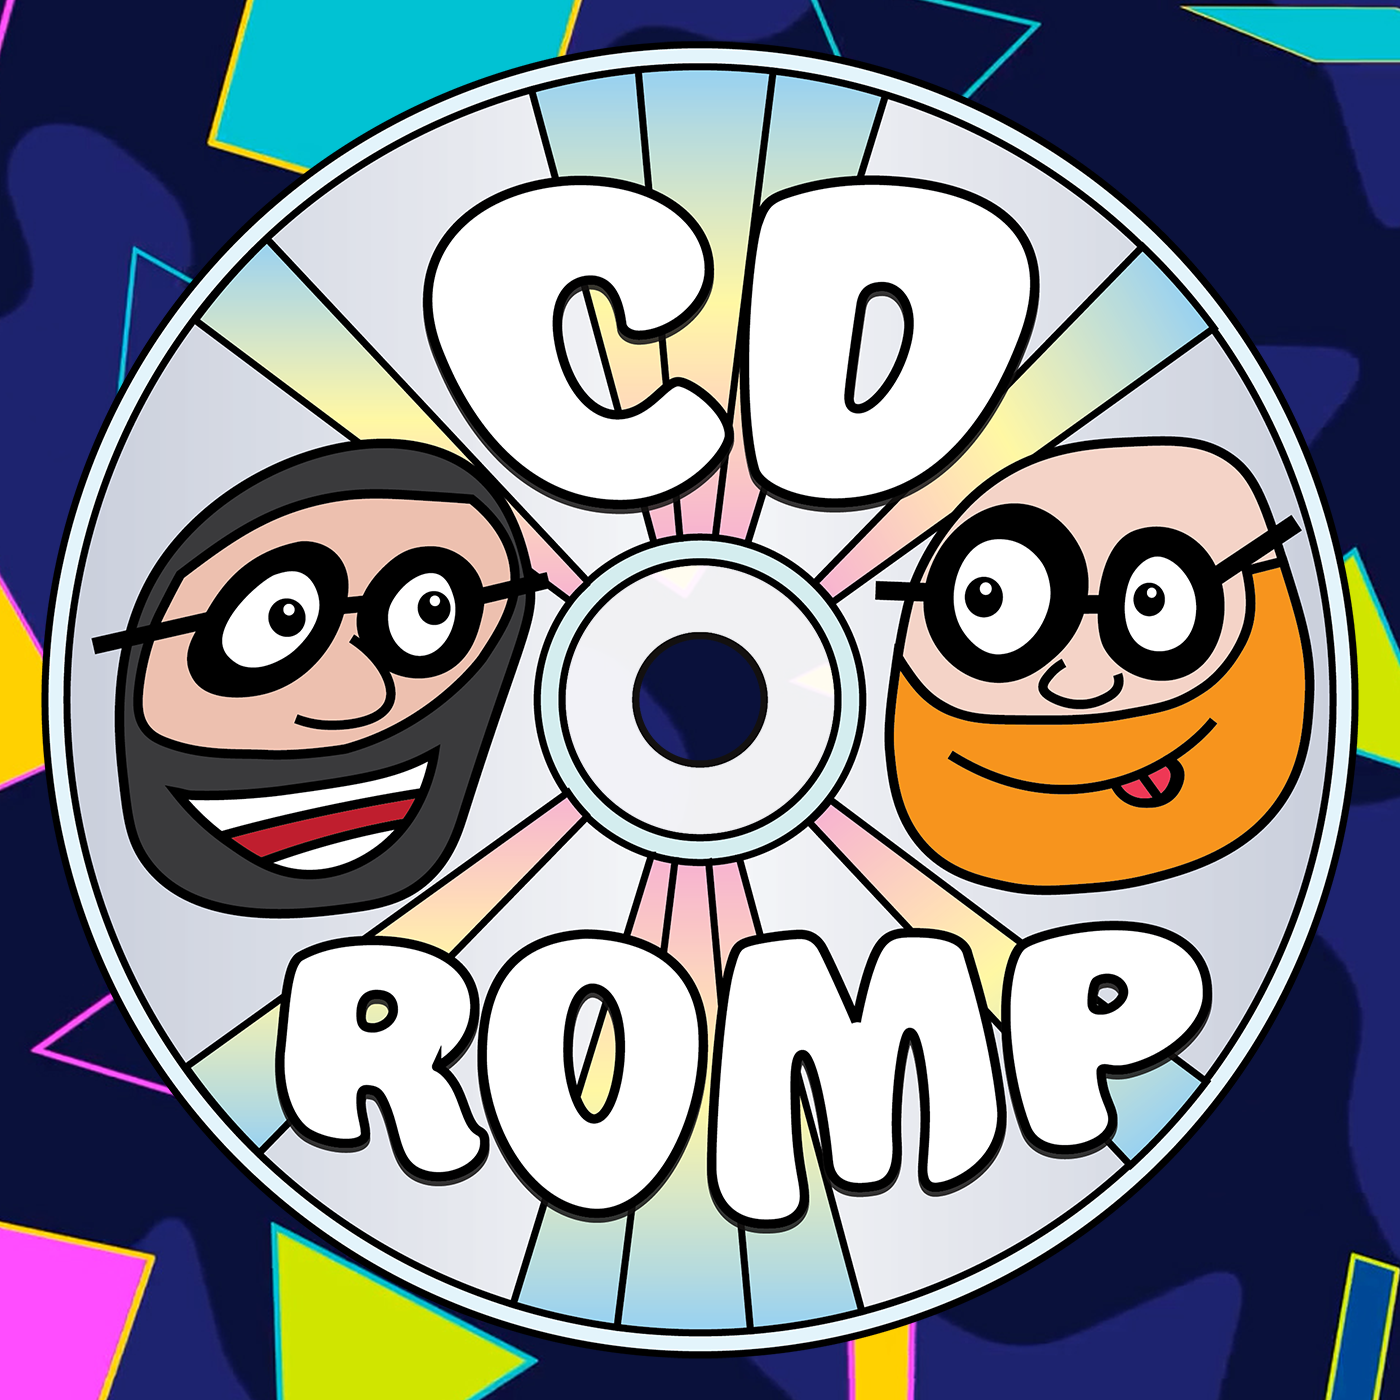 CD ROMP